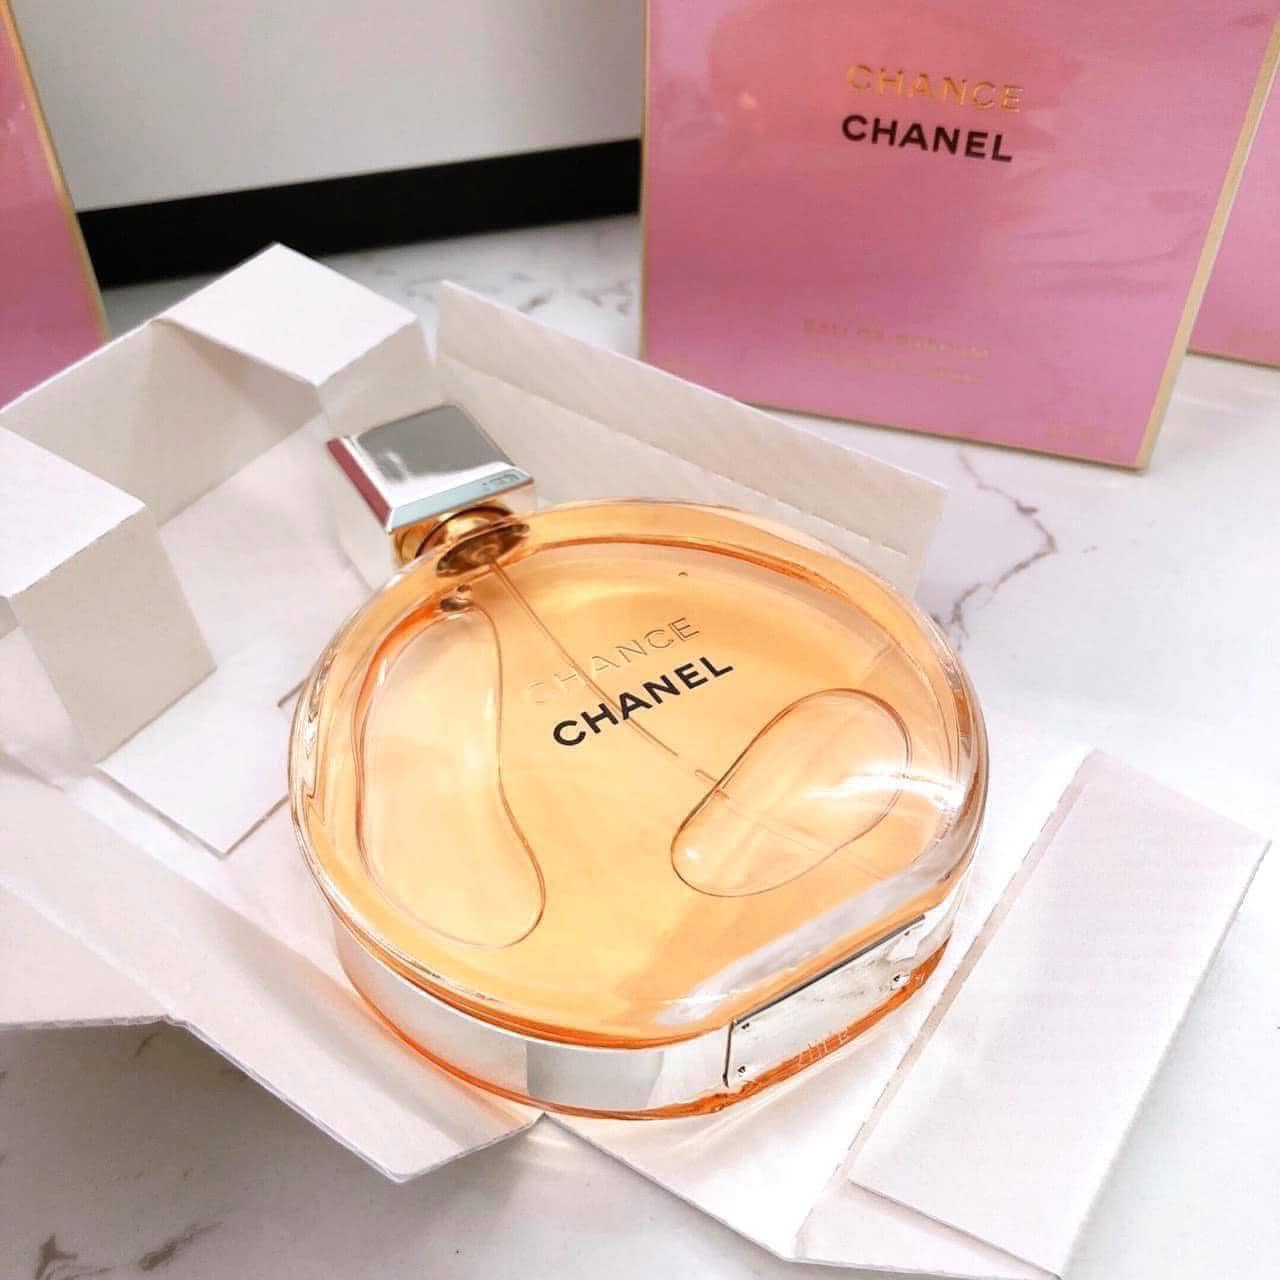 Nước hoa Chanel Chance eau de parfum chính hãng thơm sang| Mifashop